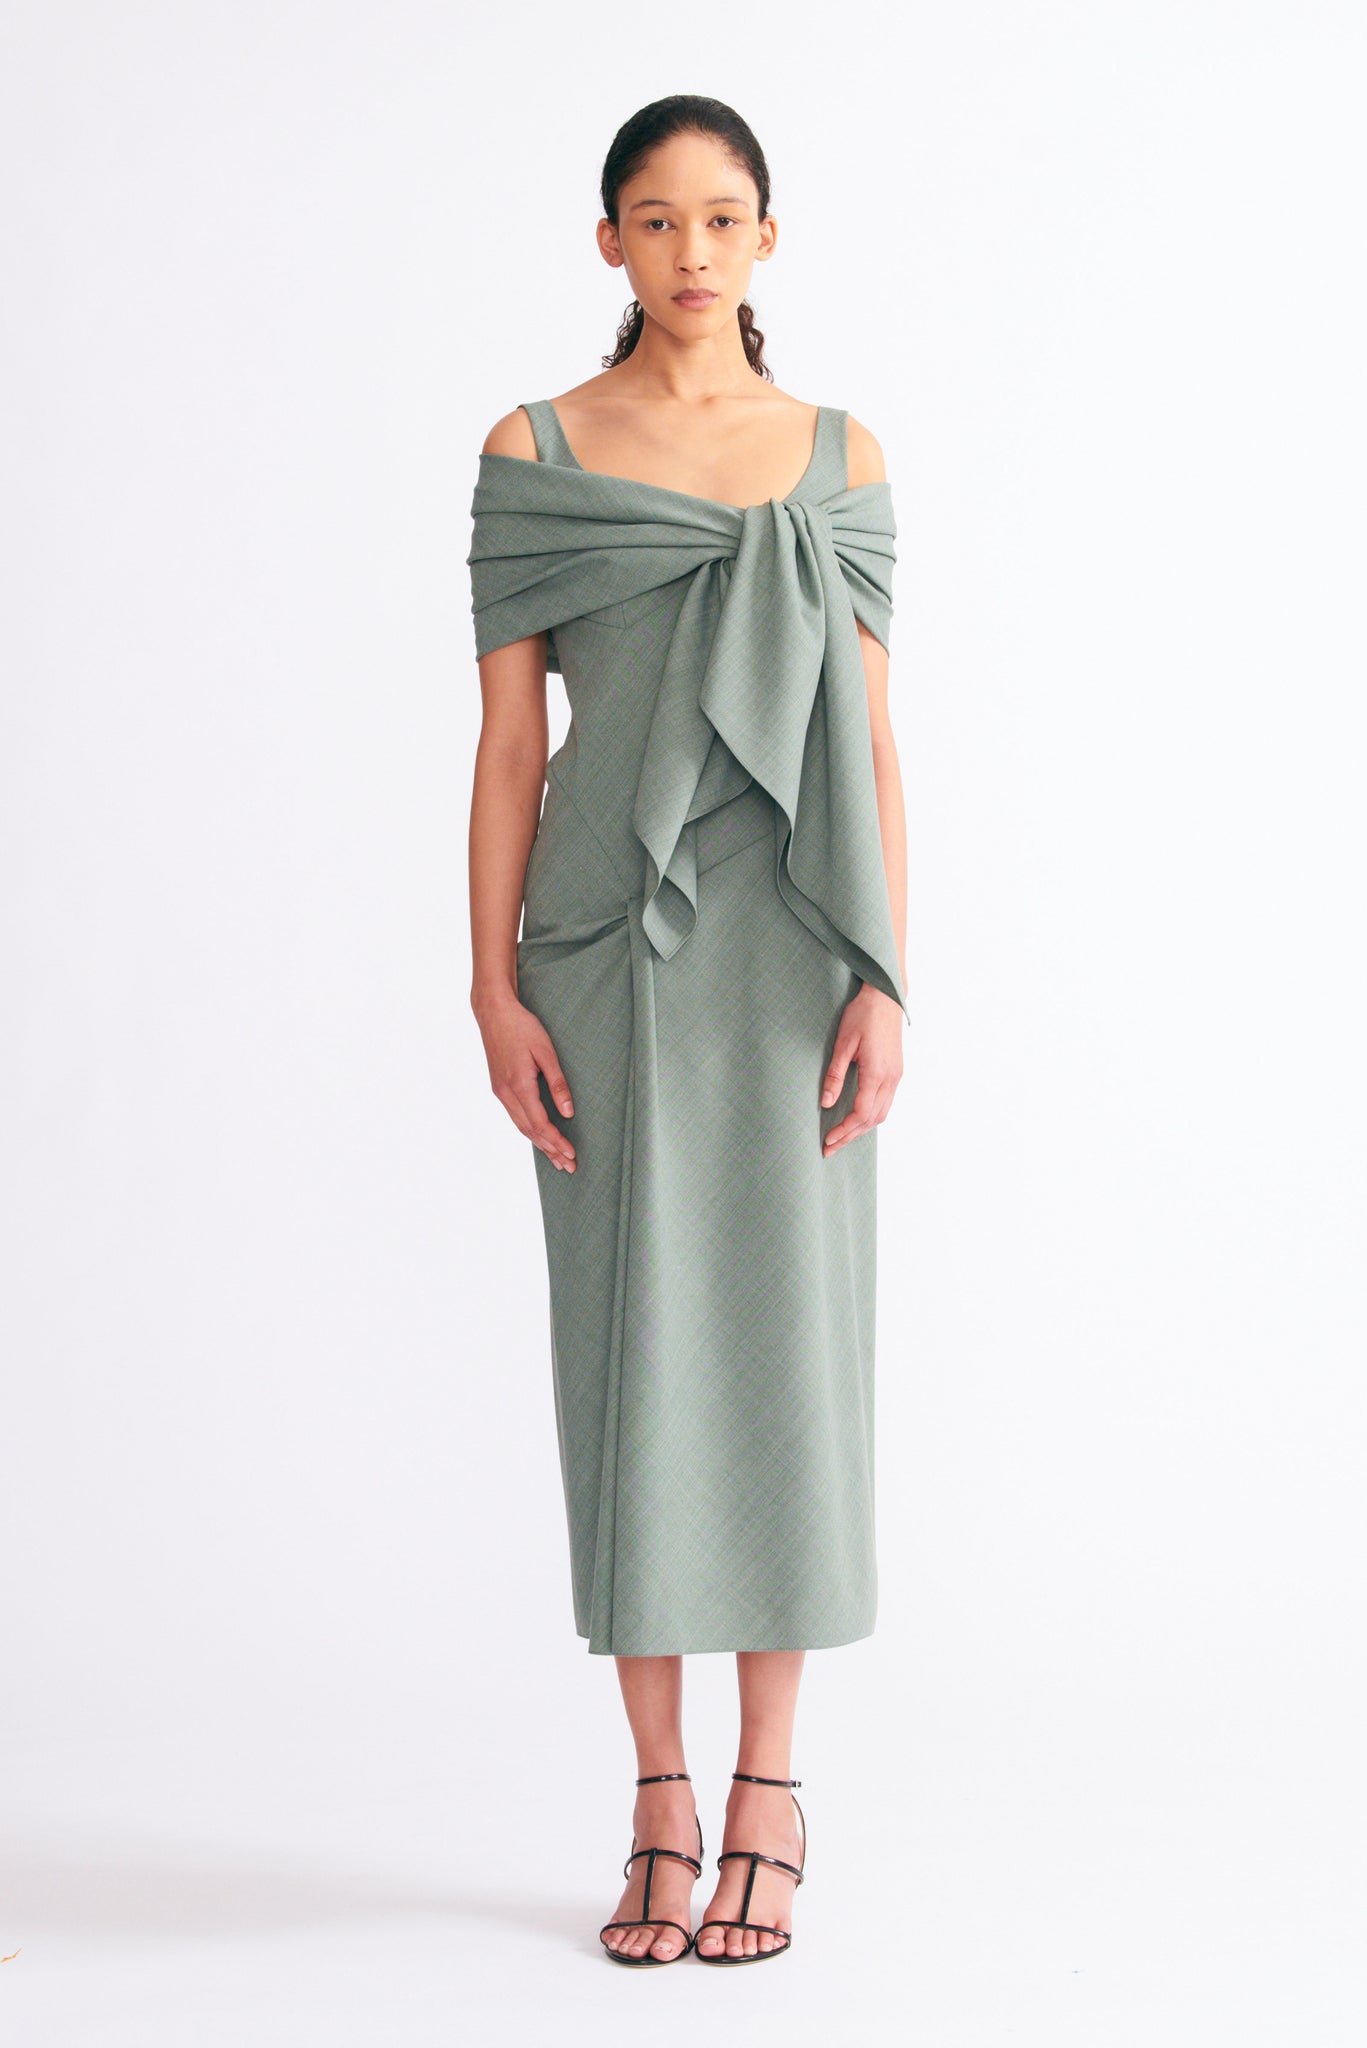 Barlowa Scarf Tie Dress in Khaki Summer Wool | Emilia Wickstead